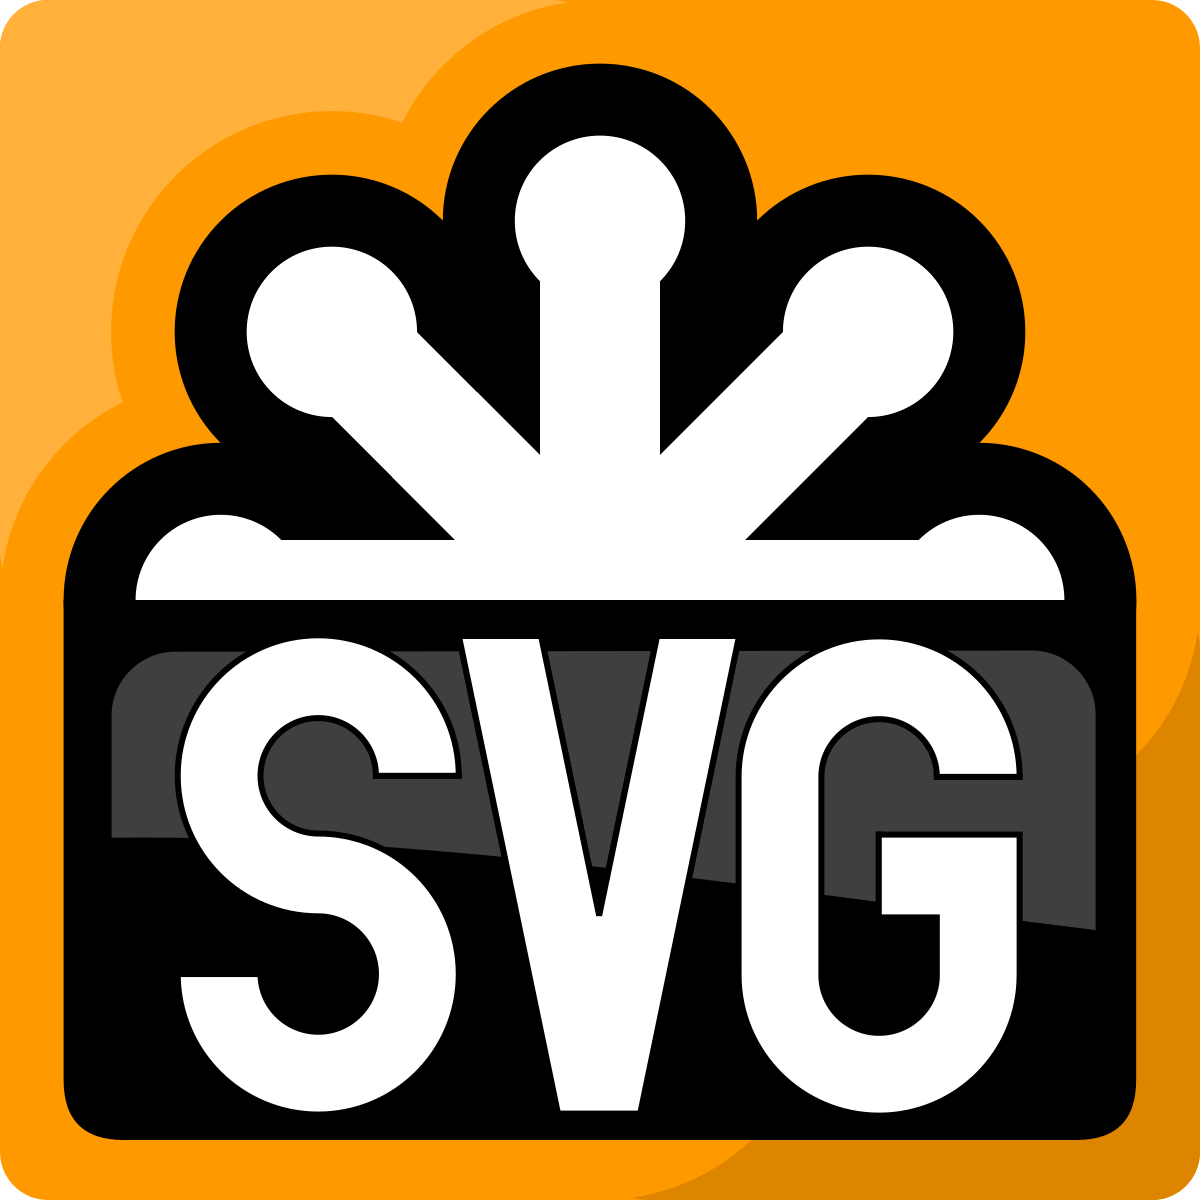 Svg com. Svg изображения. Svg файл. X svg. Svg фото.